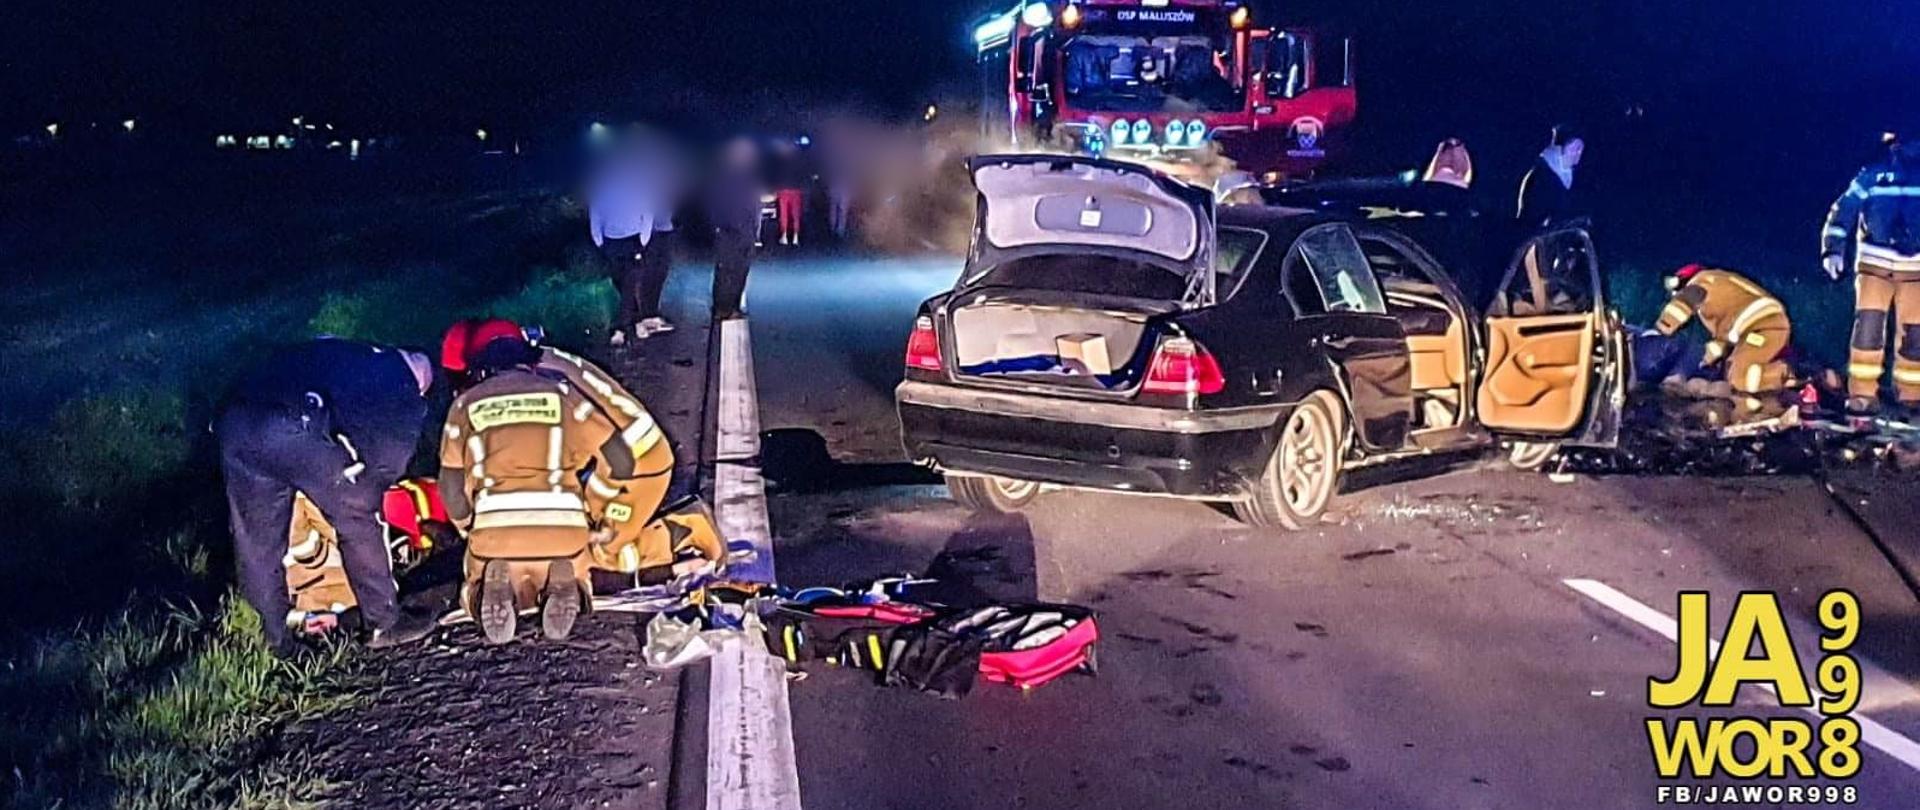 Obraz przedstawia strażaków udzielających pomocy poszkodowanemu w wypadku. Na środku jezdni uszkodzony pojazd osobowy. W tle pojazd pożarniczy i osoby postronne.